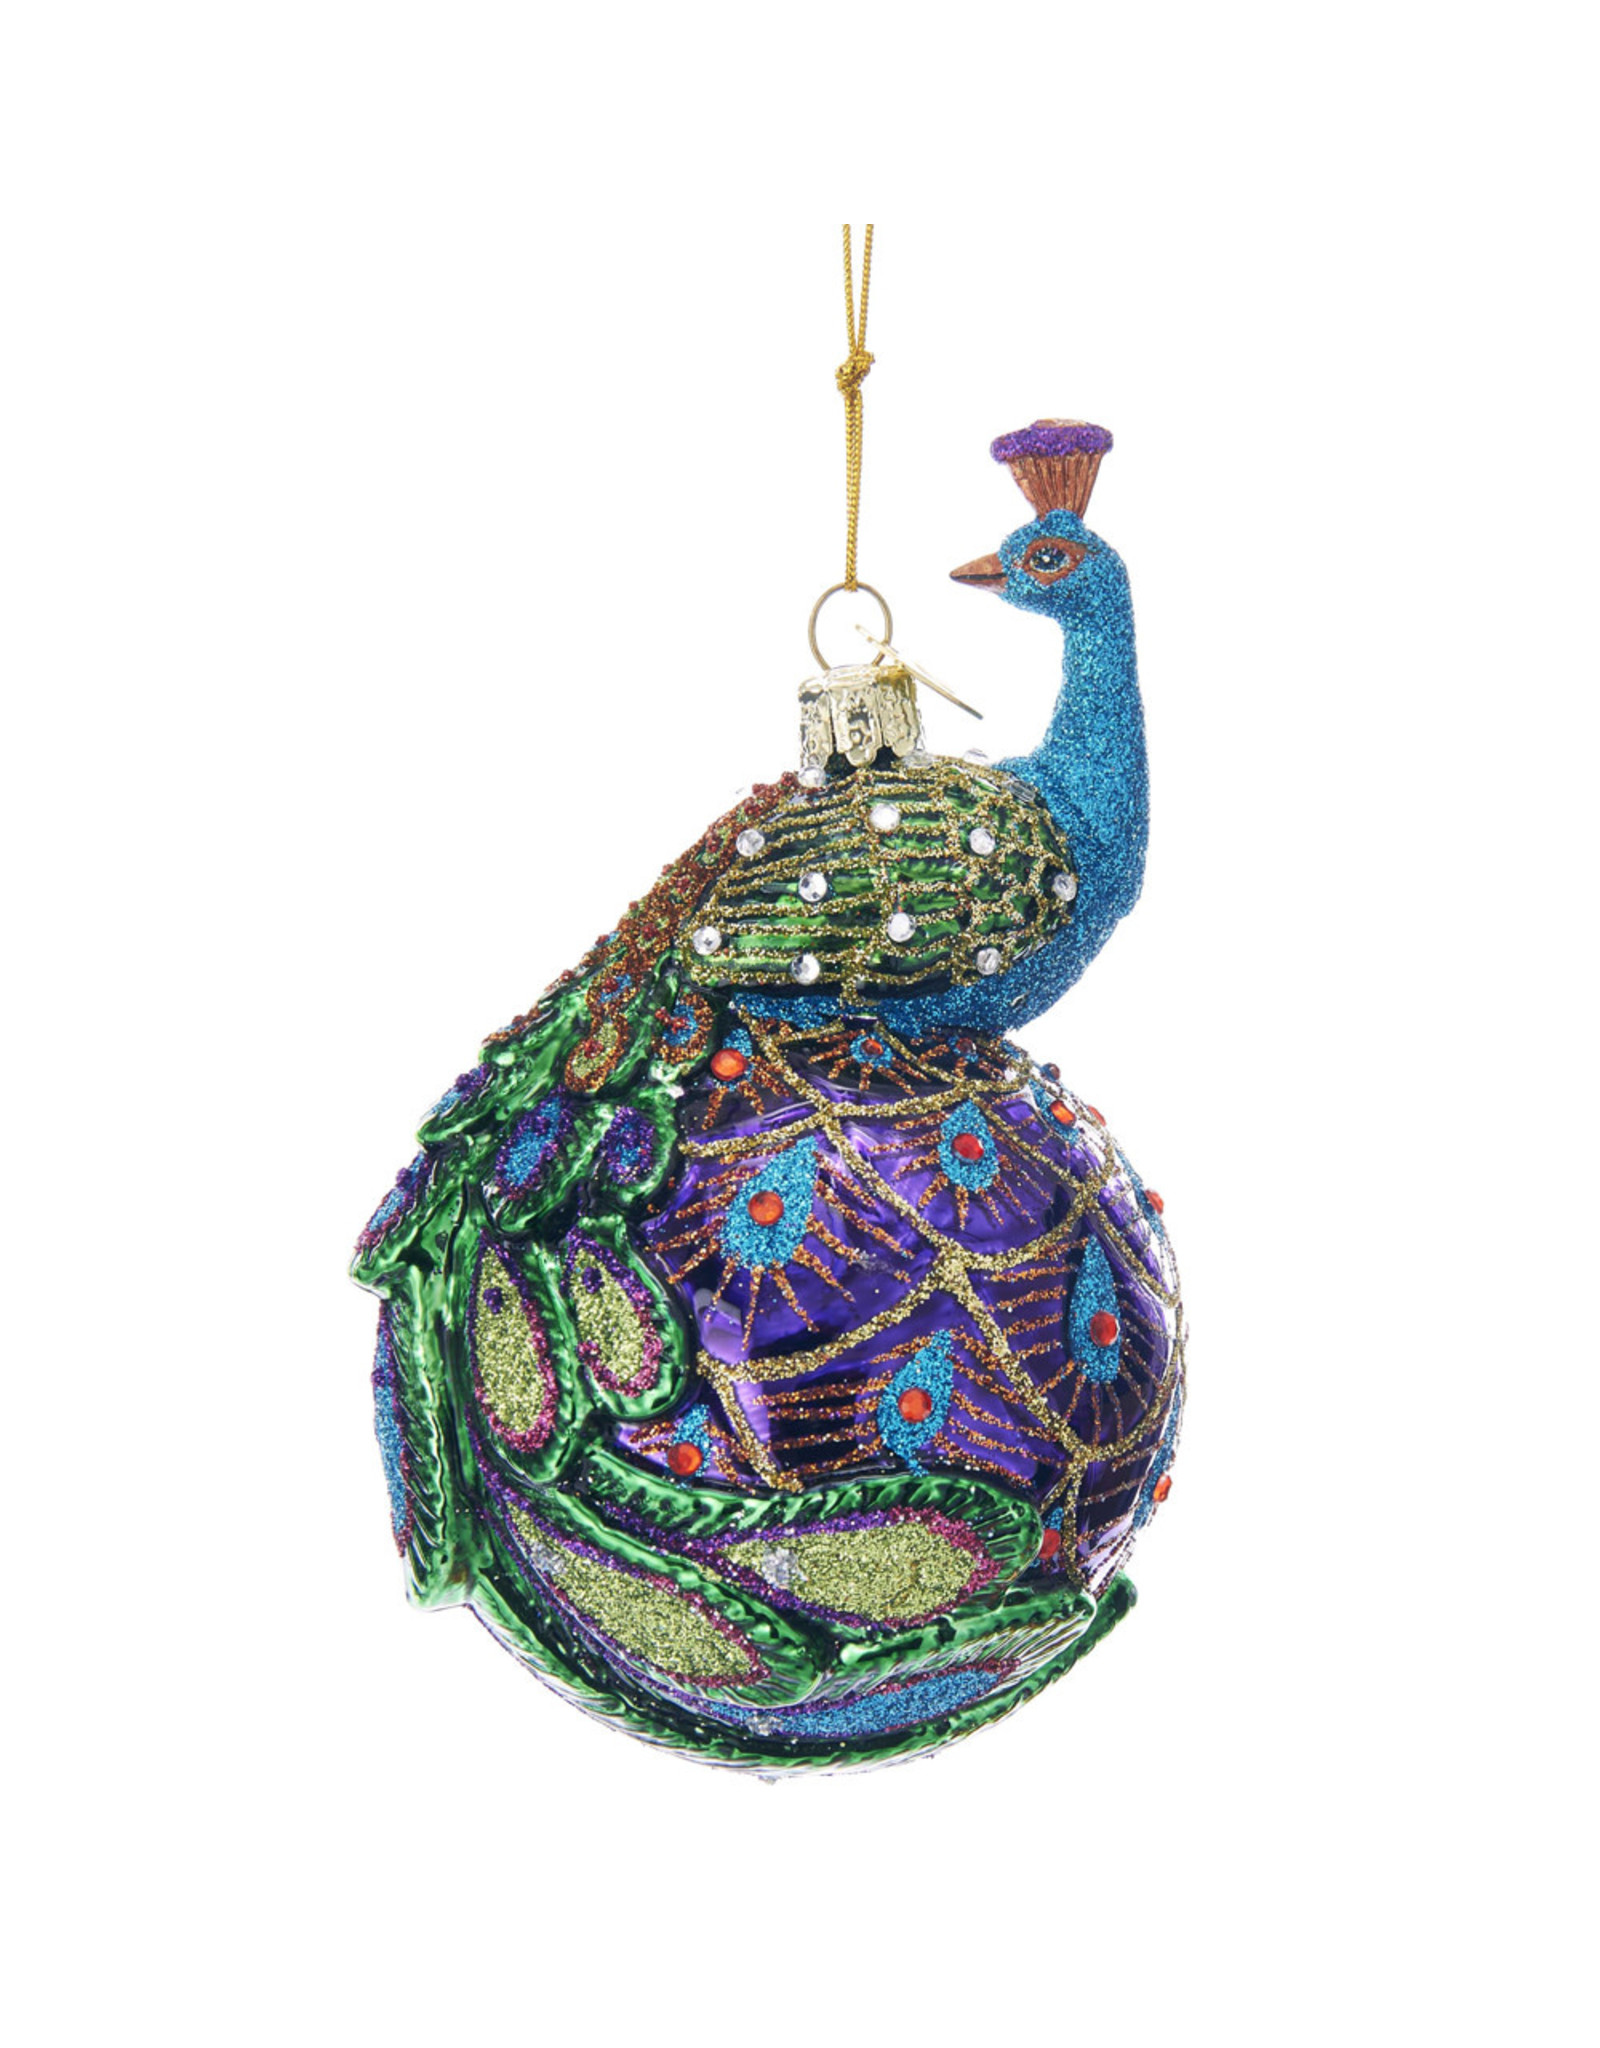 Kurt Adler Nobel Gems Peacock Glass Ball Ornament